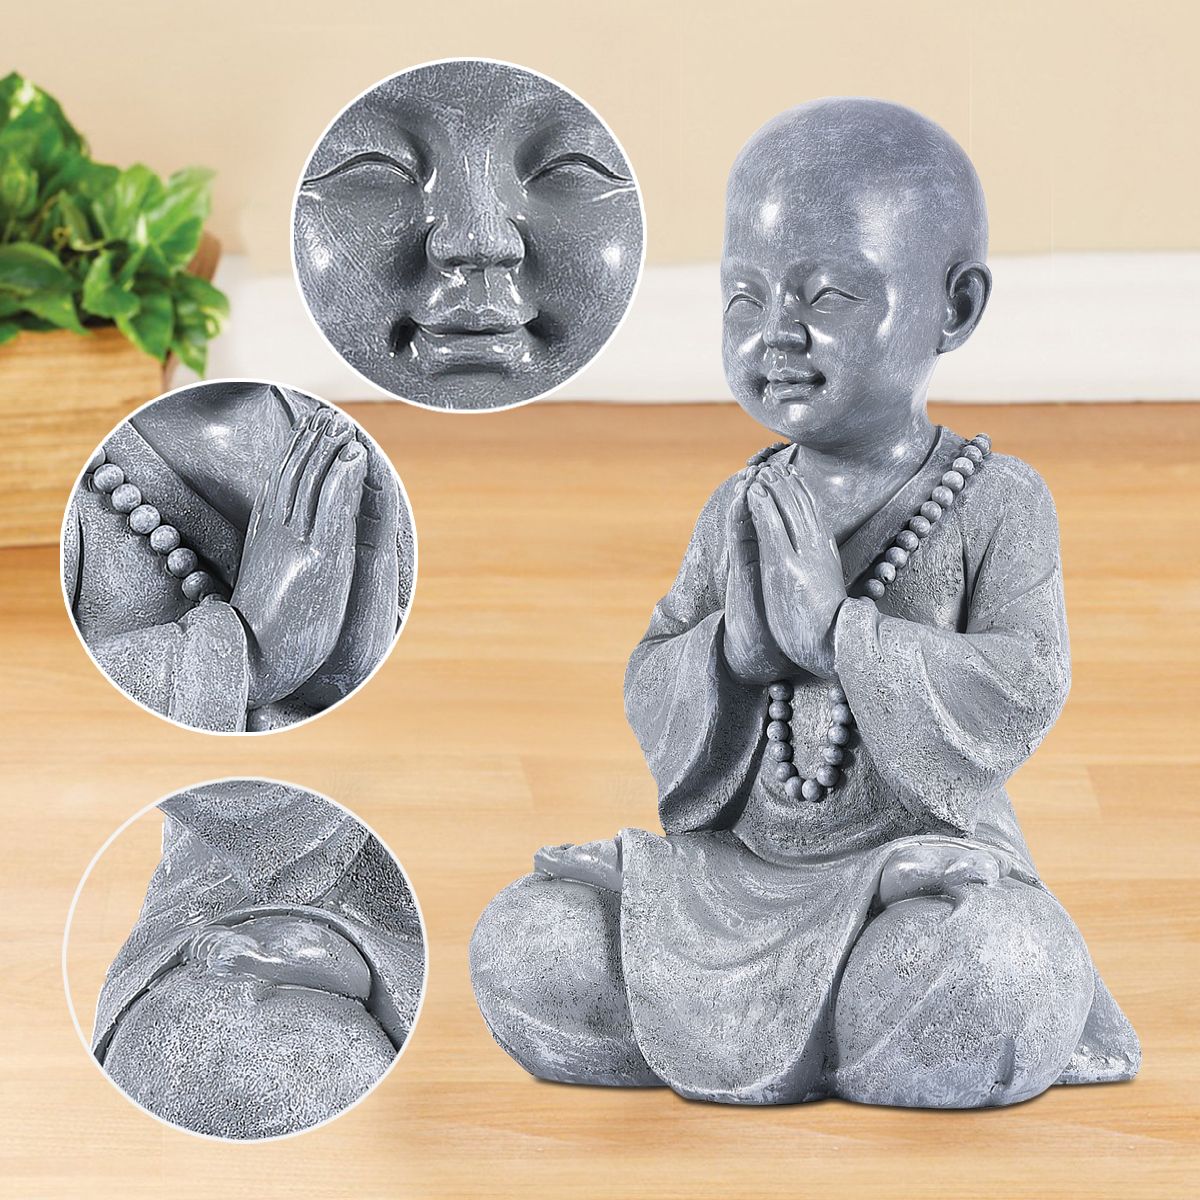 Handmade Meditating Baby Buddha Statue 🧘‍♂️ - Red Panda Market